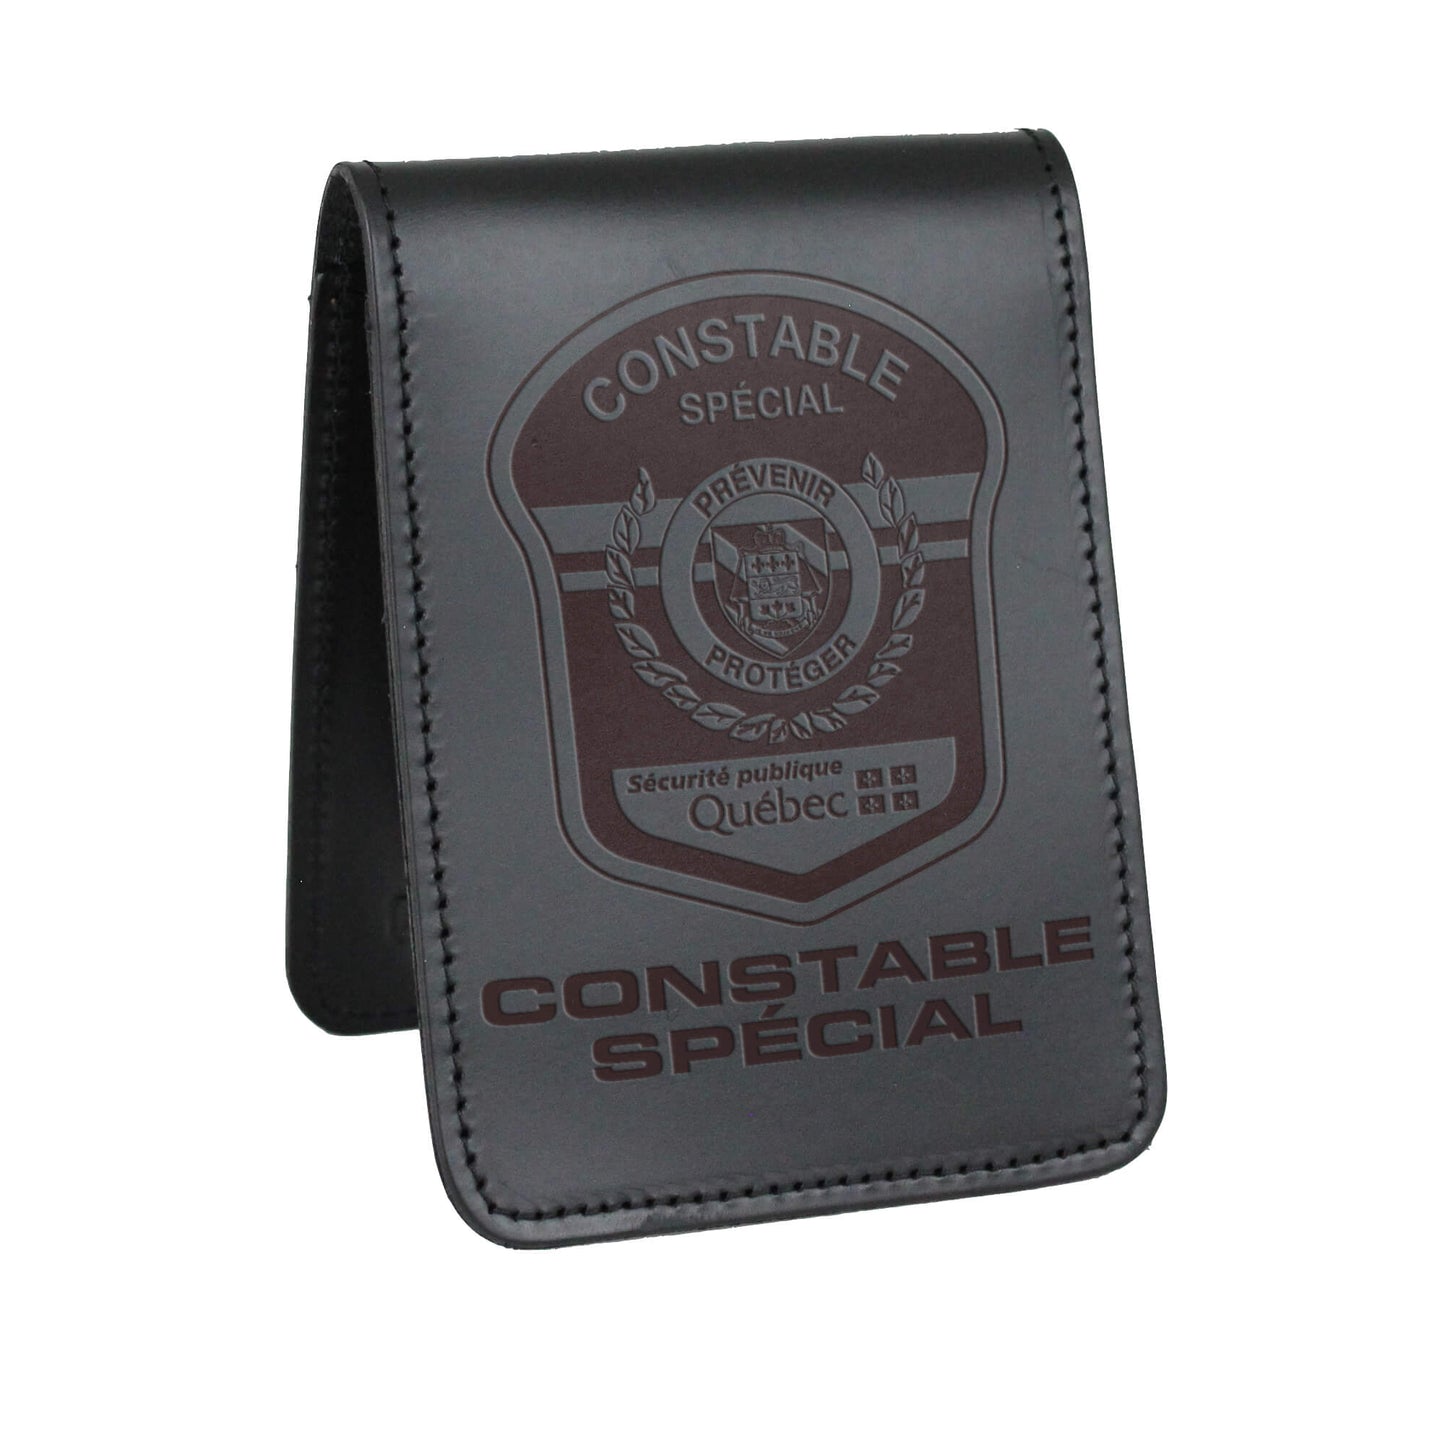 Sécurité publique Québec - Constable Spécial Notebook Cover-Perfect Fit-911 Duty Gear Canada